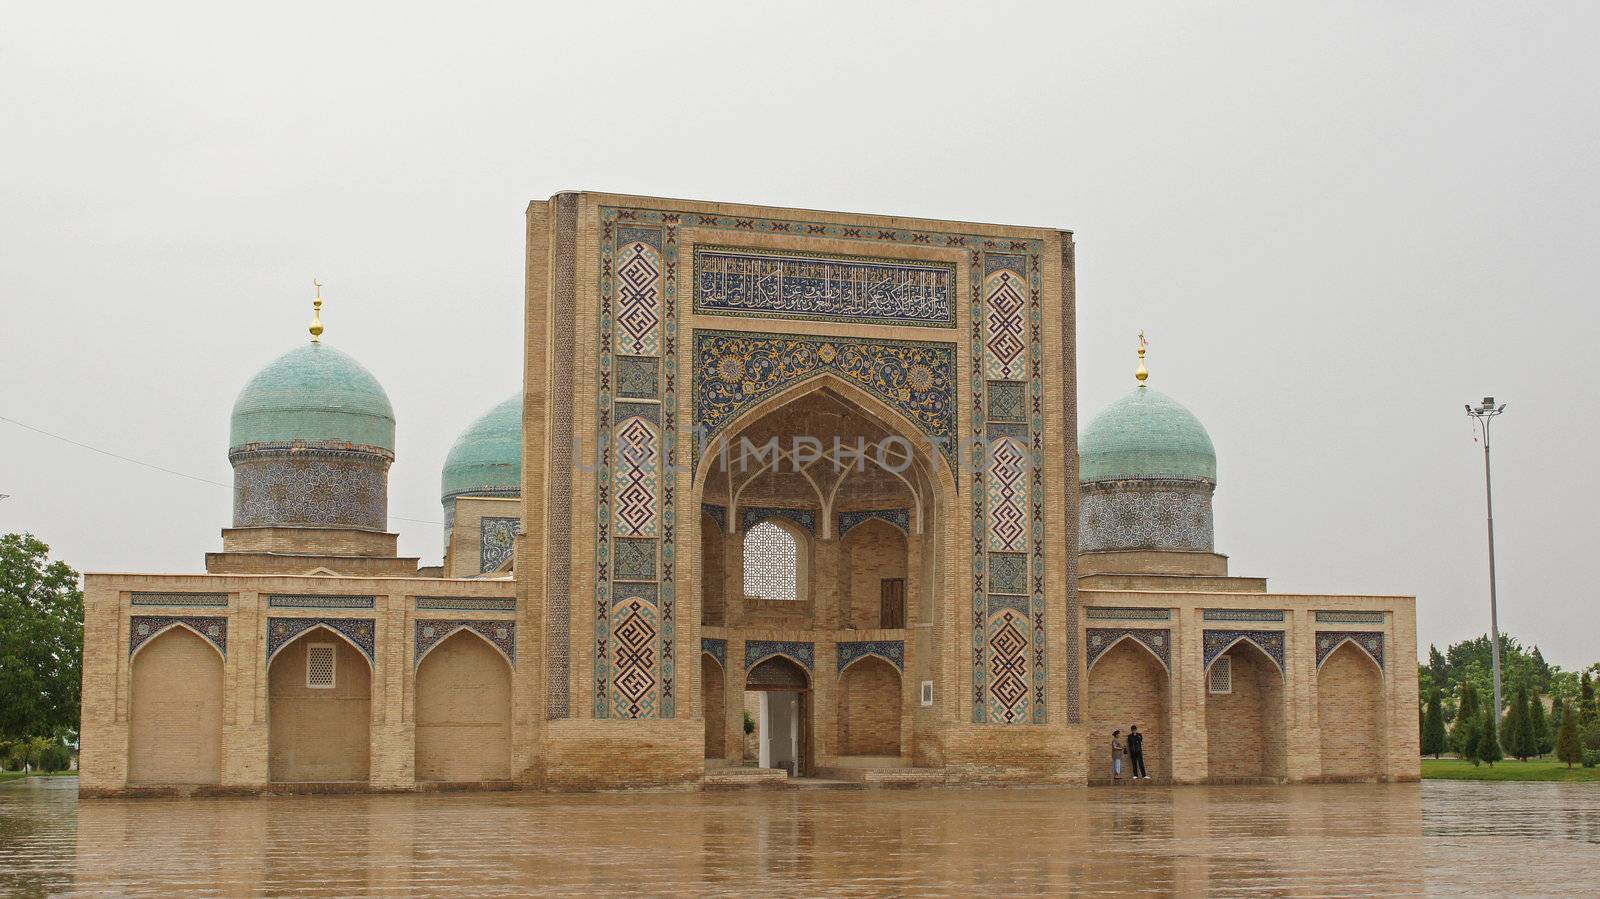 Madrassa Baroqxon, Tashkent, Uzbekistan by alfotokunst